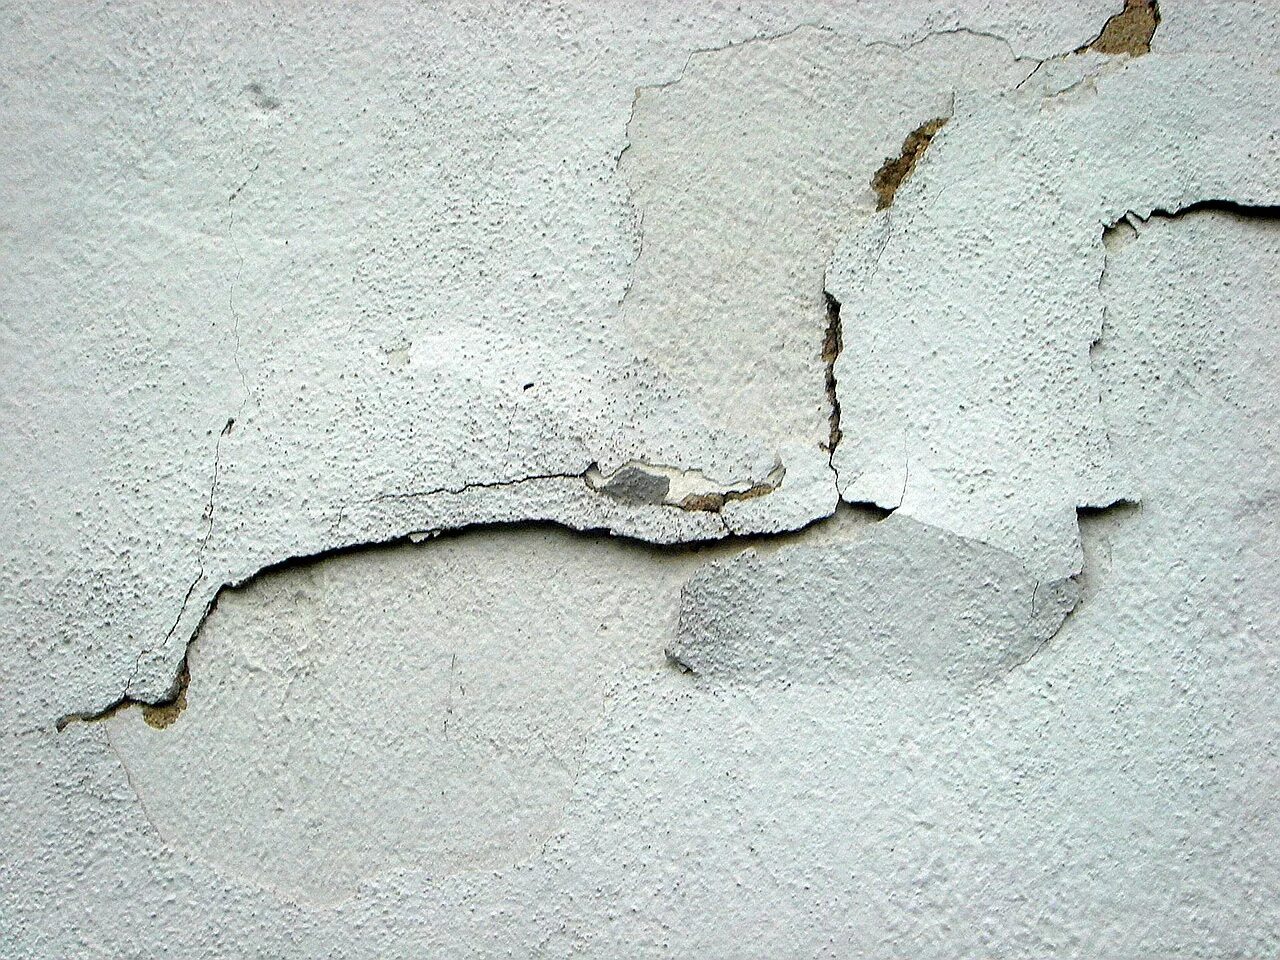 На стене появились трещины. Усадочные трещины в штукатурном слое. Усадочные трещины в штукатурном слое, частичное отслоение штукатурки. Отслаивание штукатурки. Потрескавшаяся штукатурка.